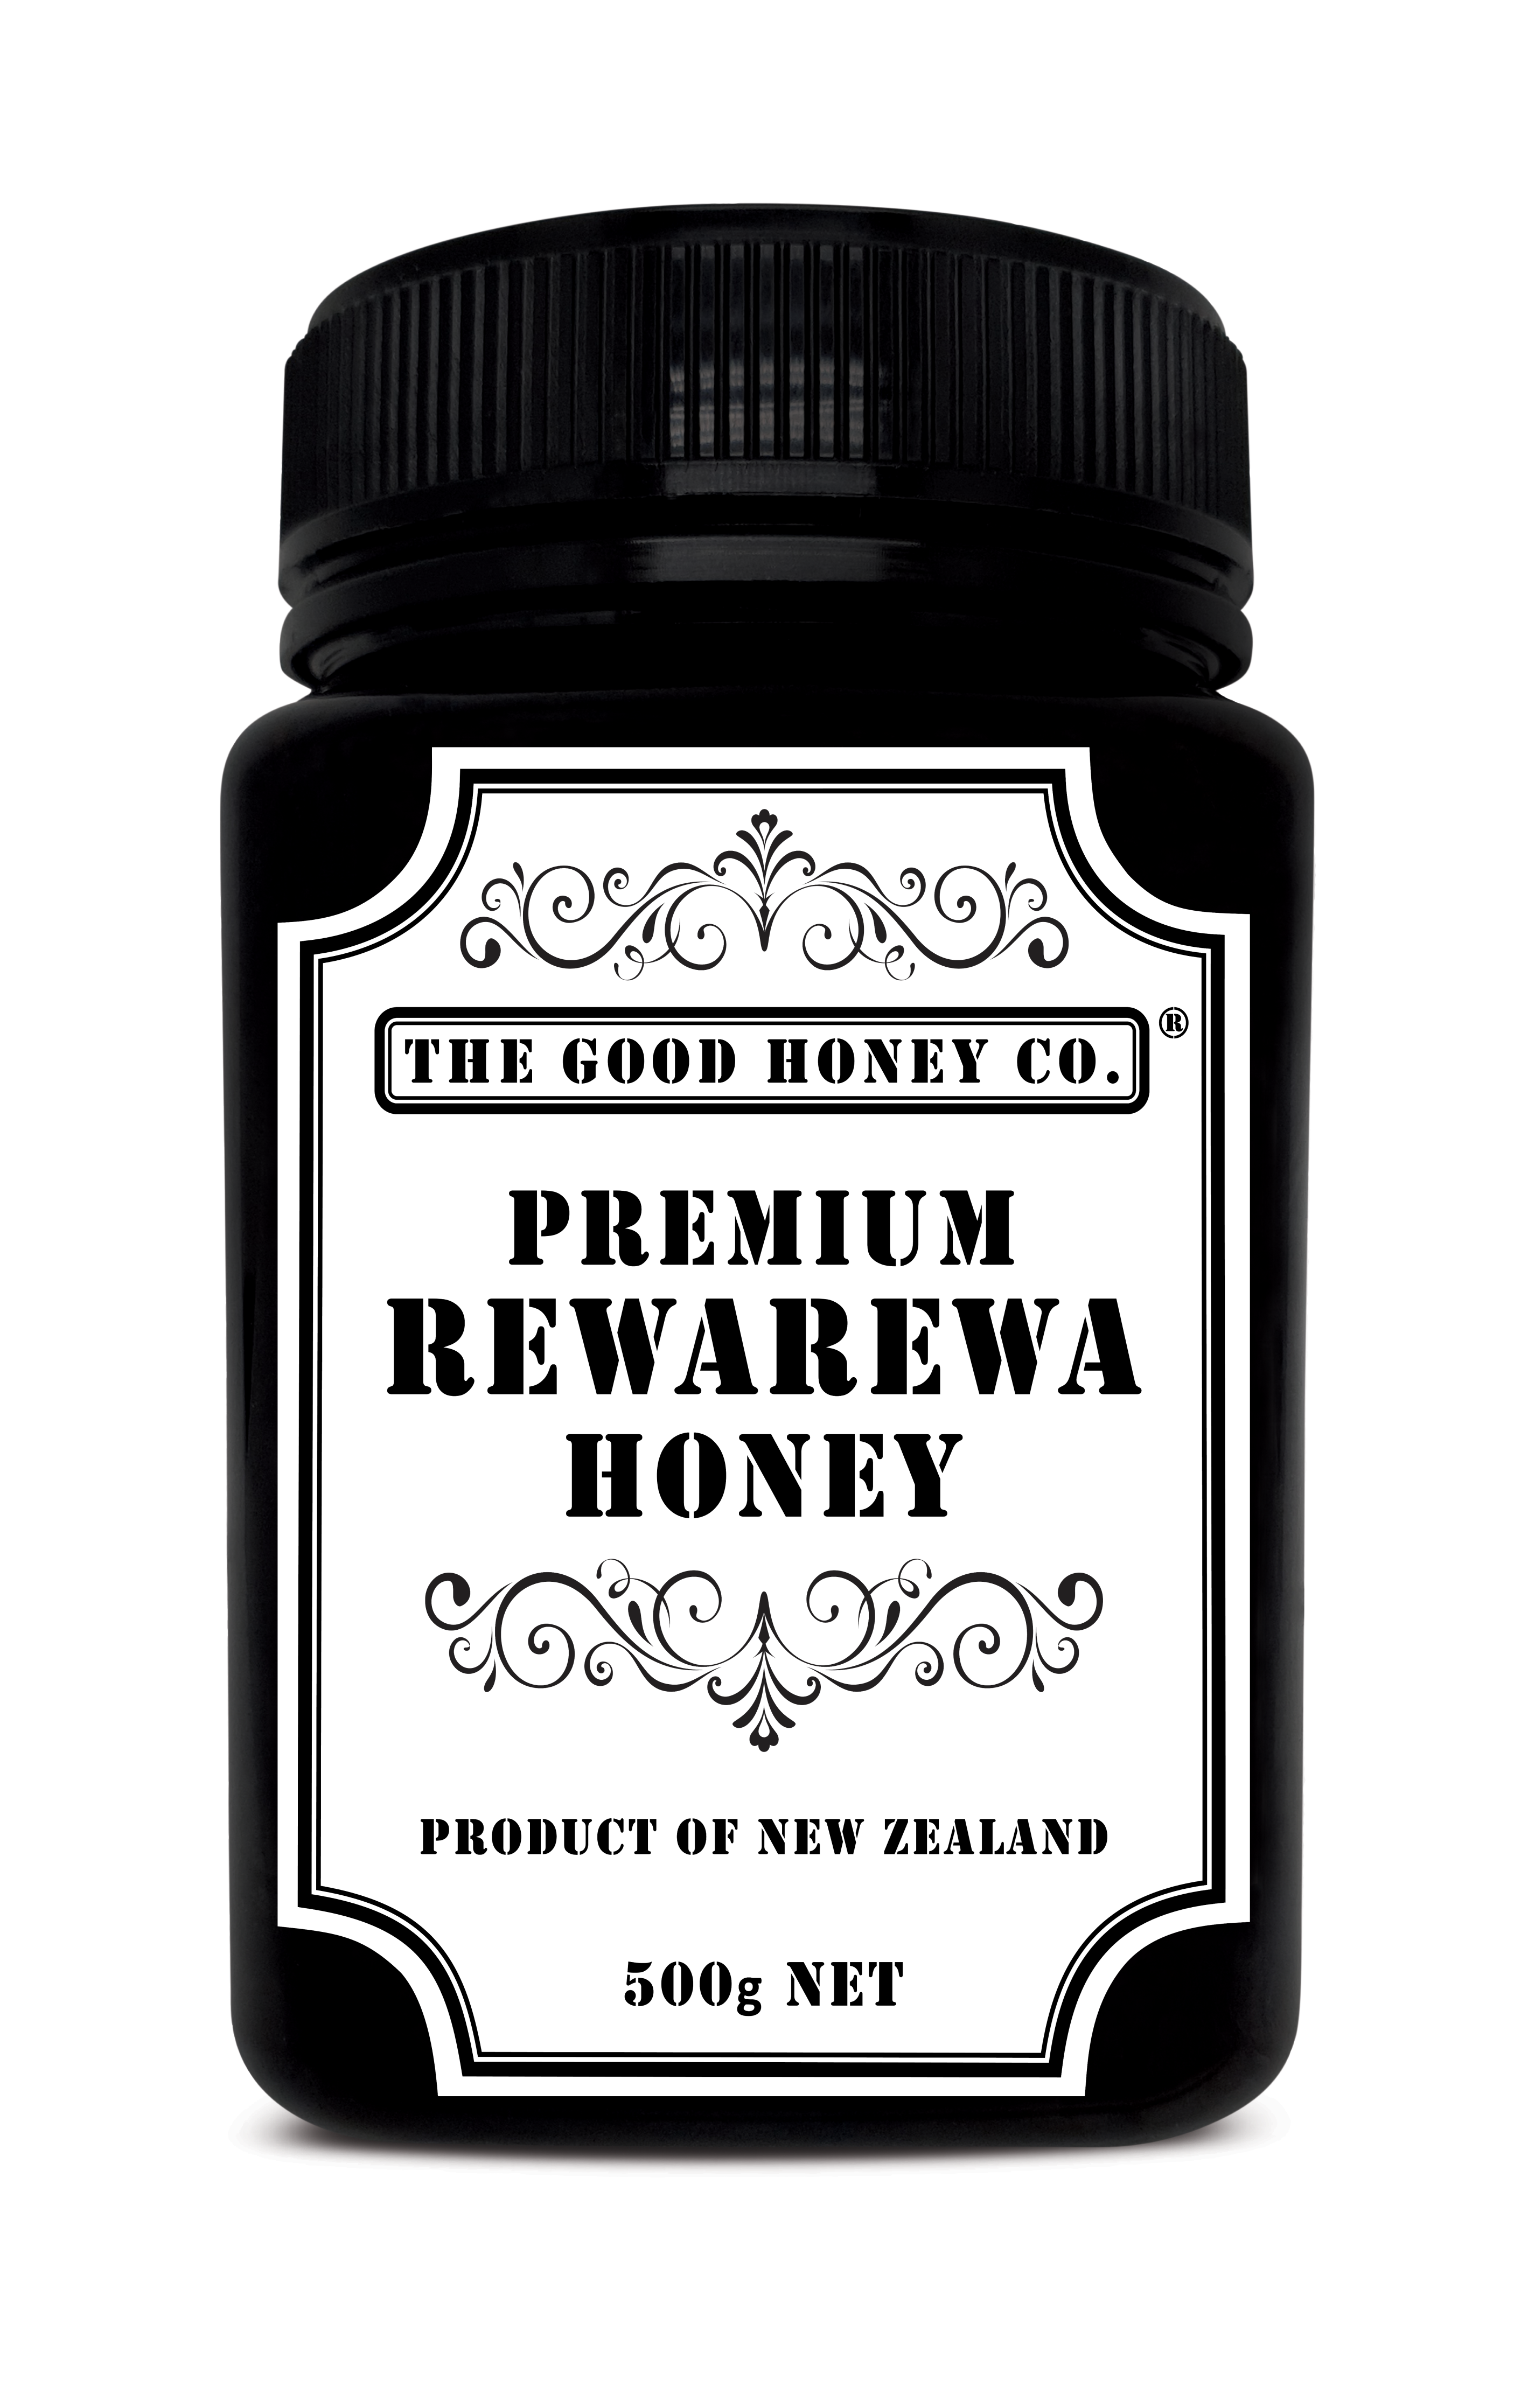 Rewarewa Honey 500g - 100% Natural Pure New Zealand Premium Honey